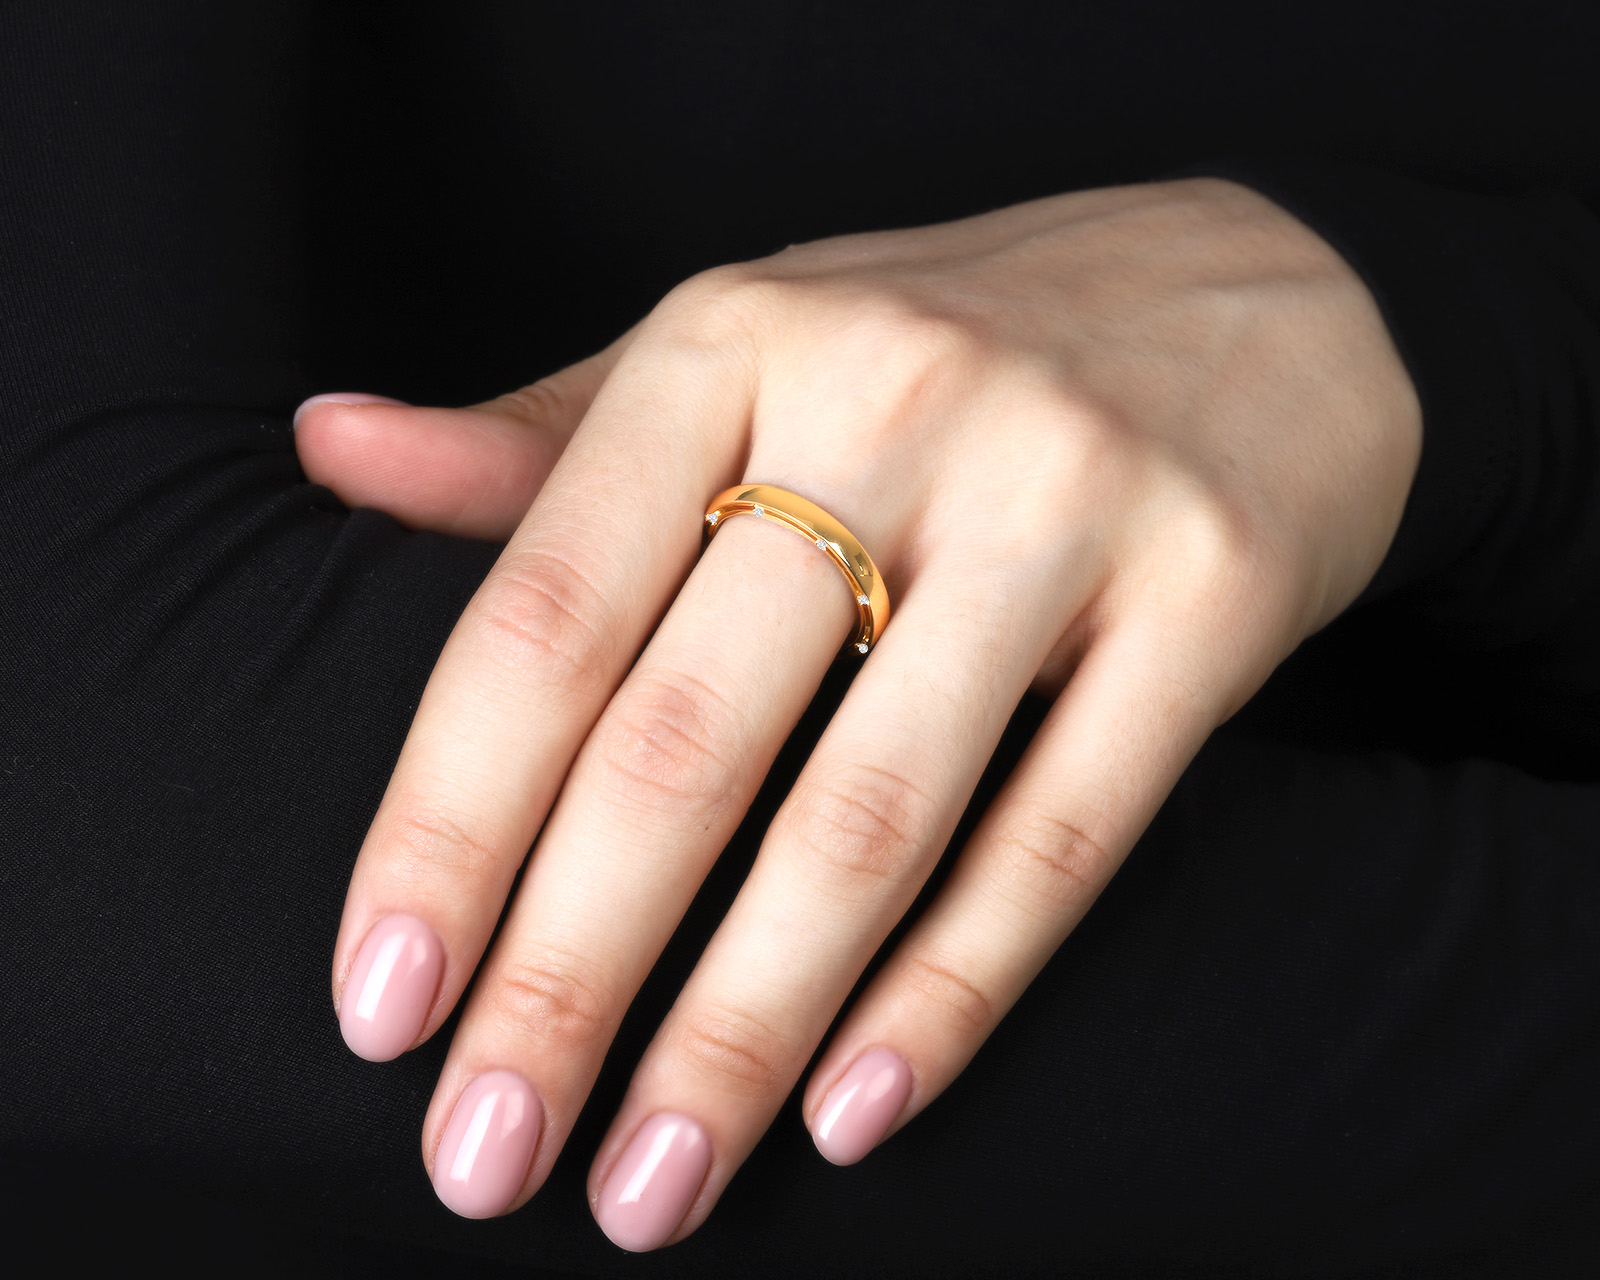 Оригинальное золотое кольцо Damiani D.Side